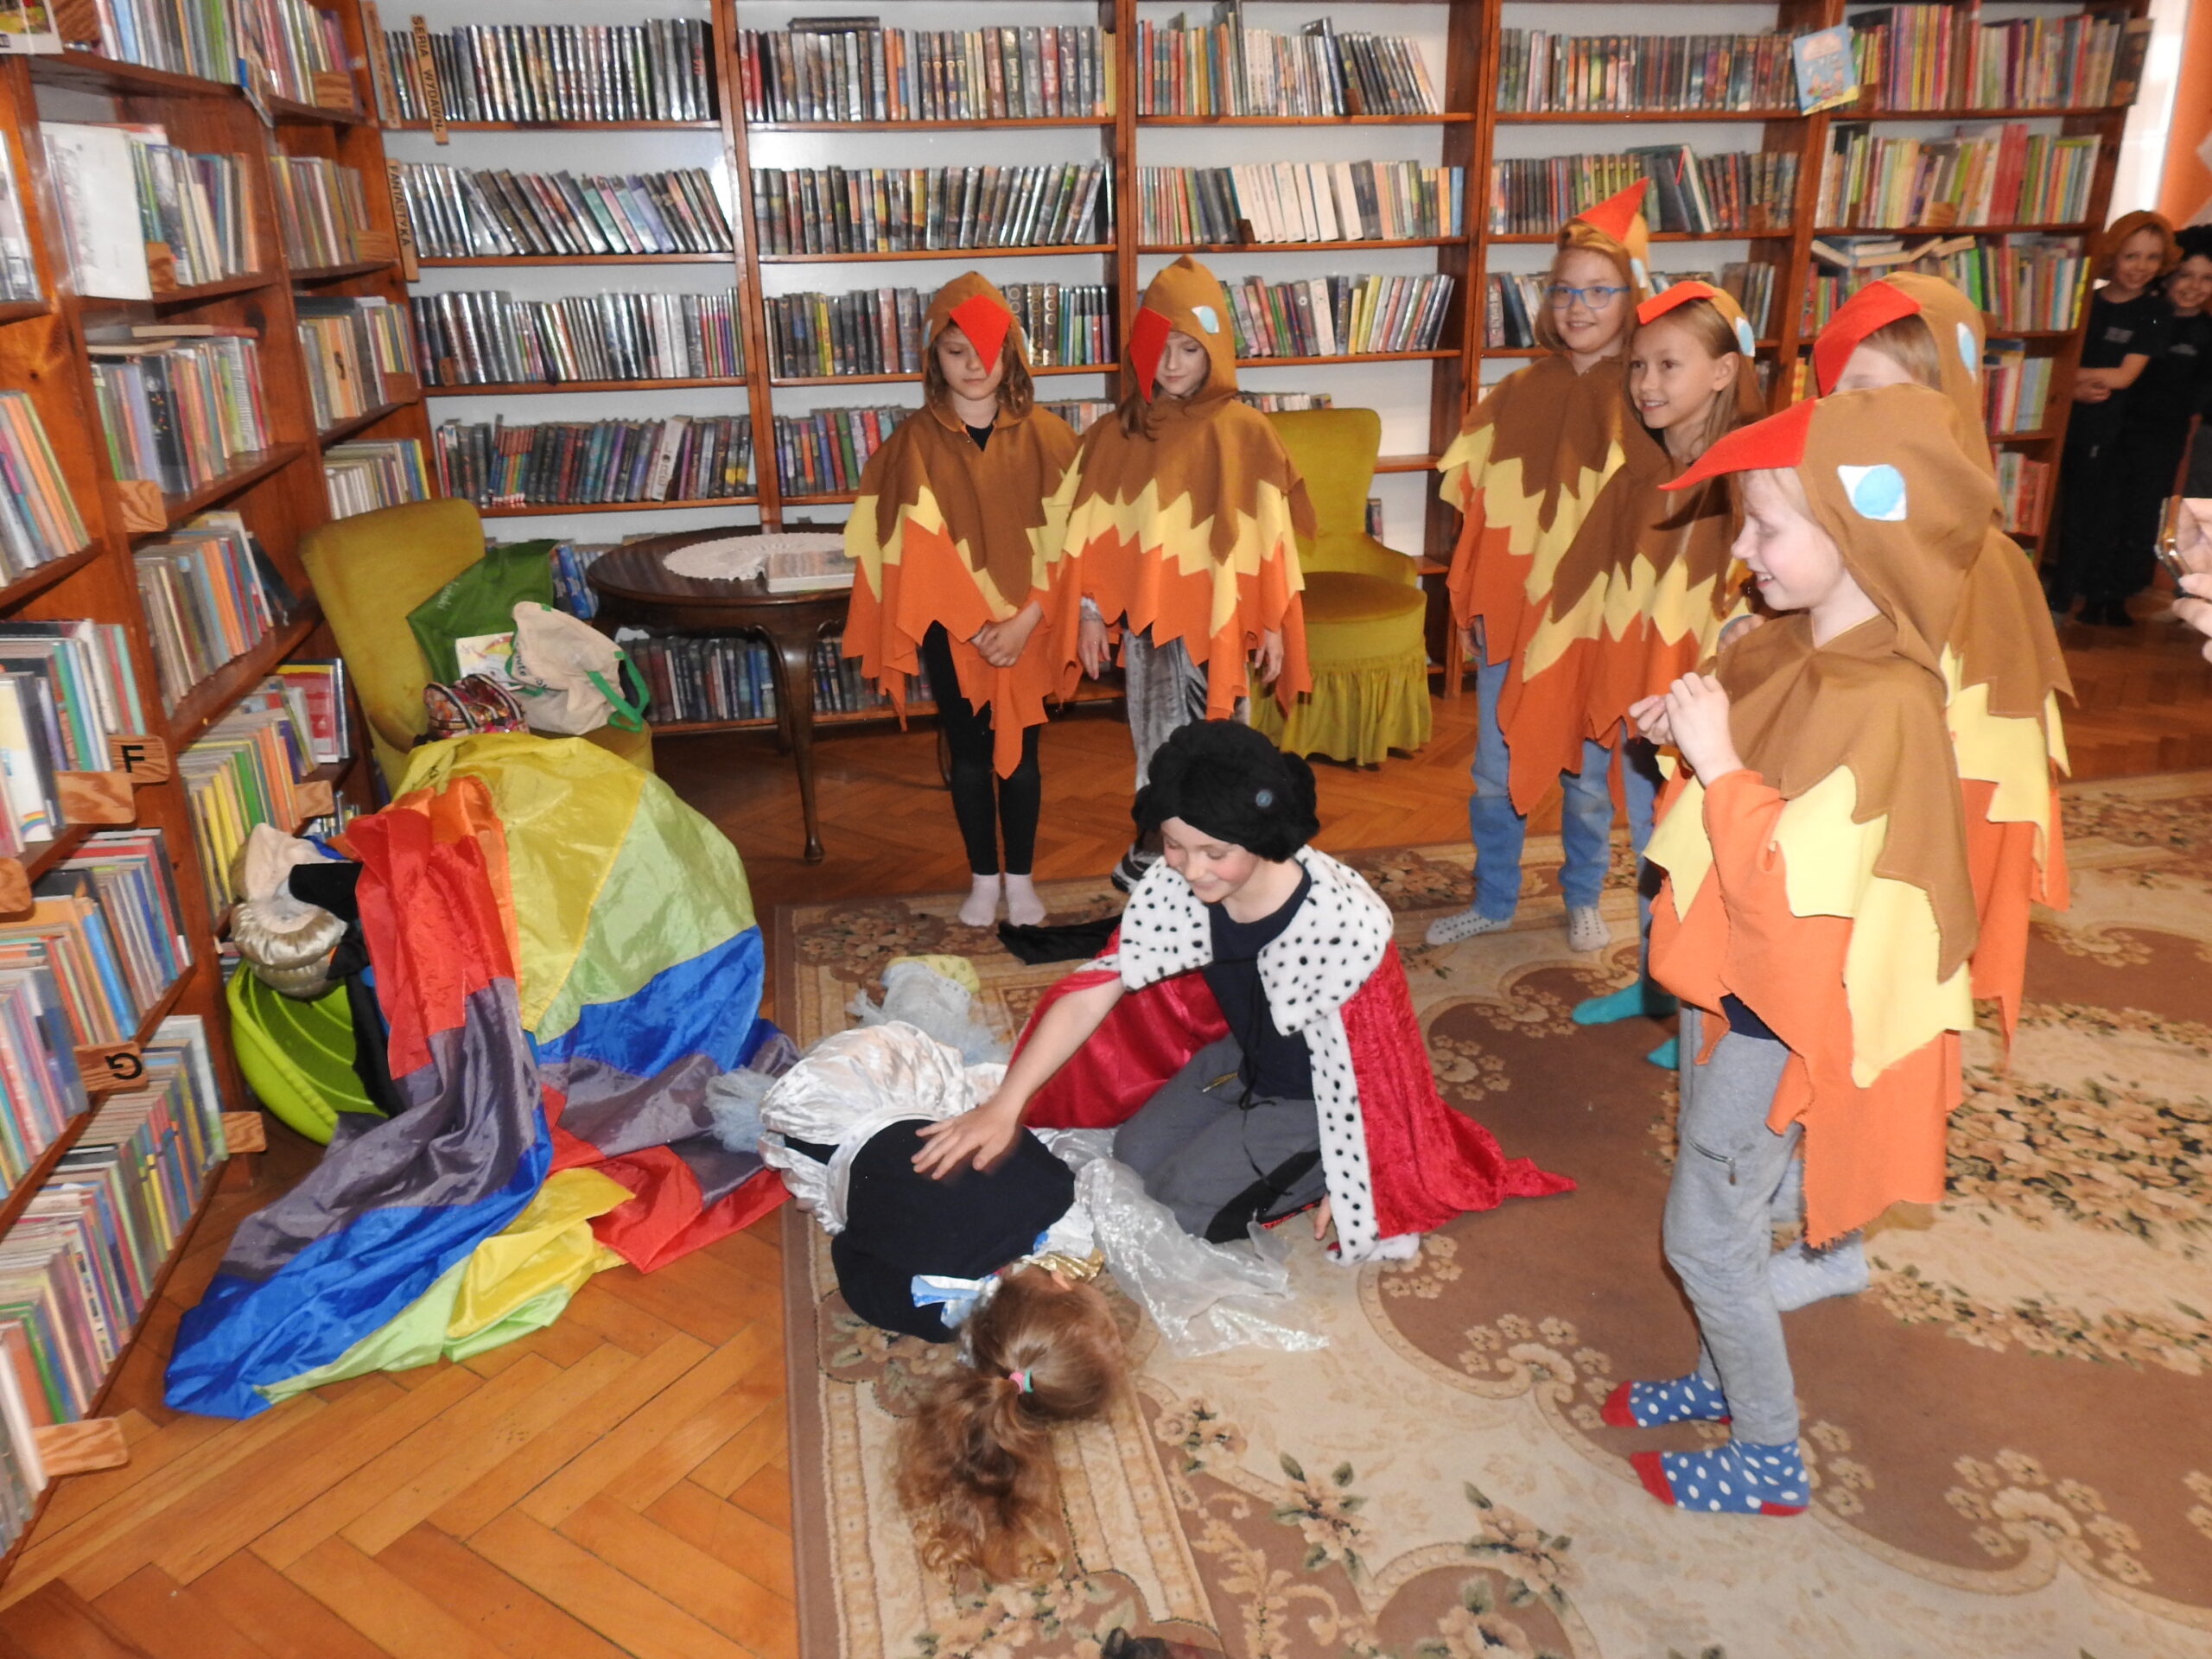 Jedna osoba leży na dywanie. Przy niej klęczy chłopiec w stroju księcia. Nad nimi stoi 6 osób w kostiumach ptaków. Po lewej stronie leżą kolorowe materiały. W tle stół, dwa fotele oraz regały z książkami.